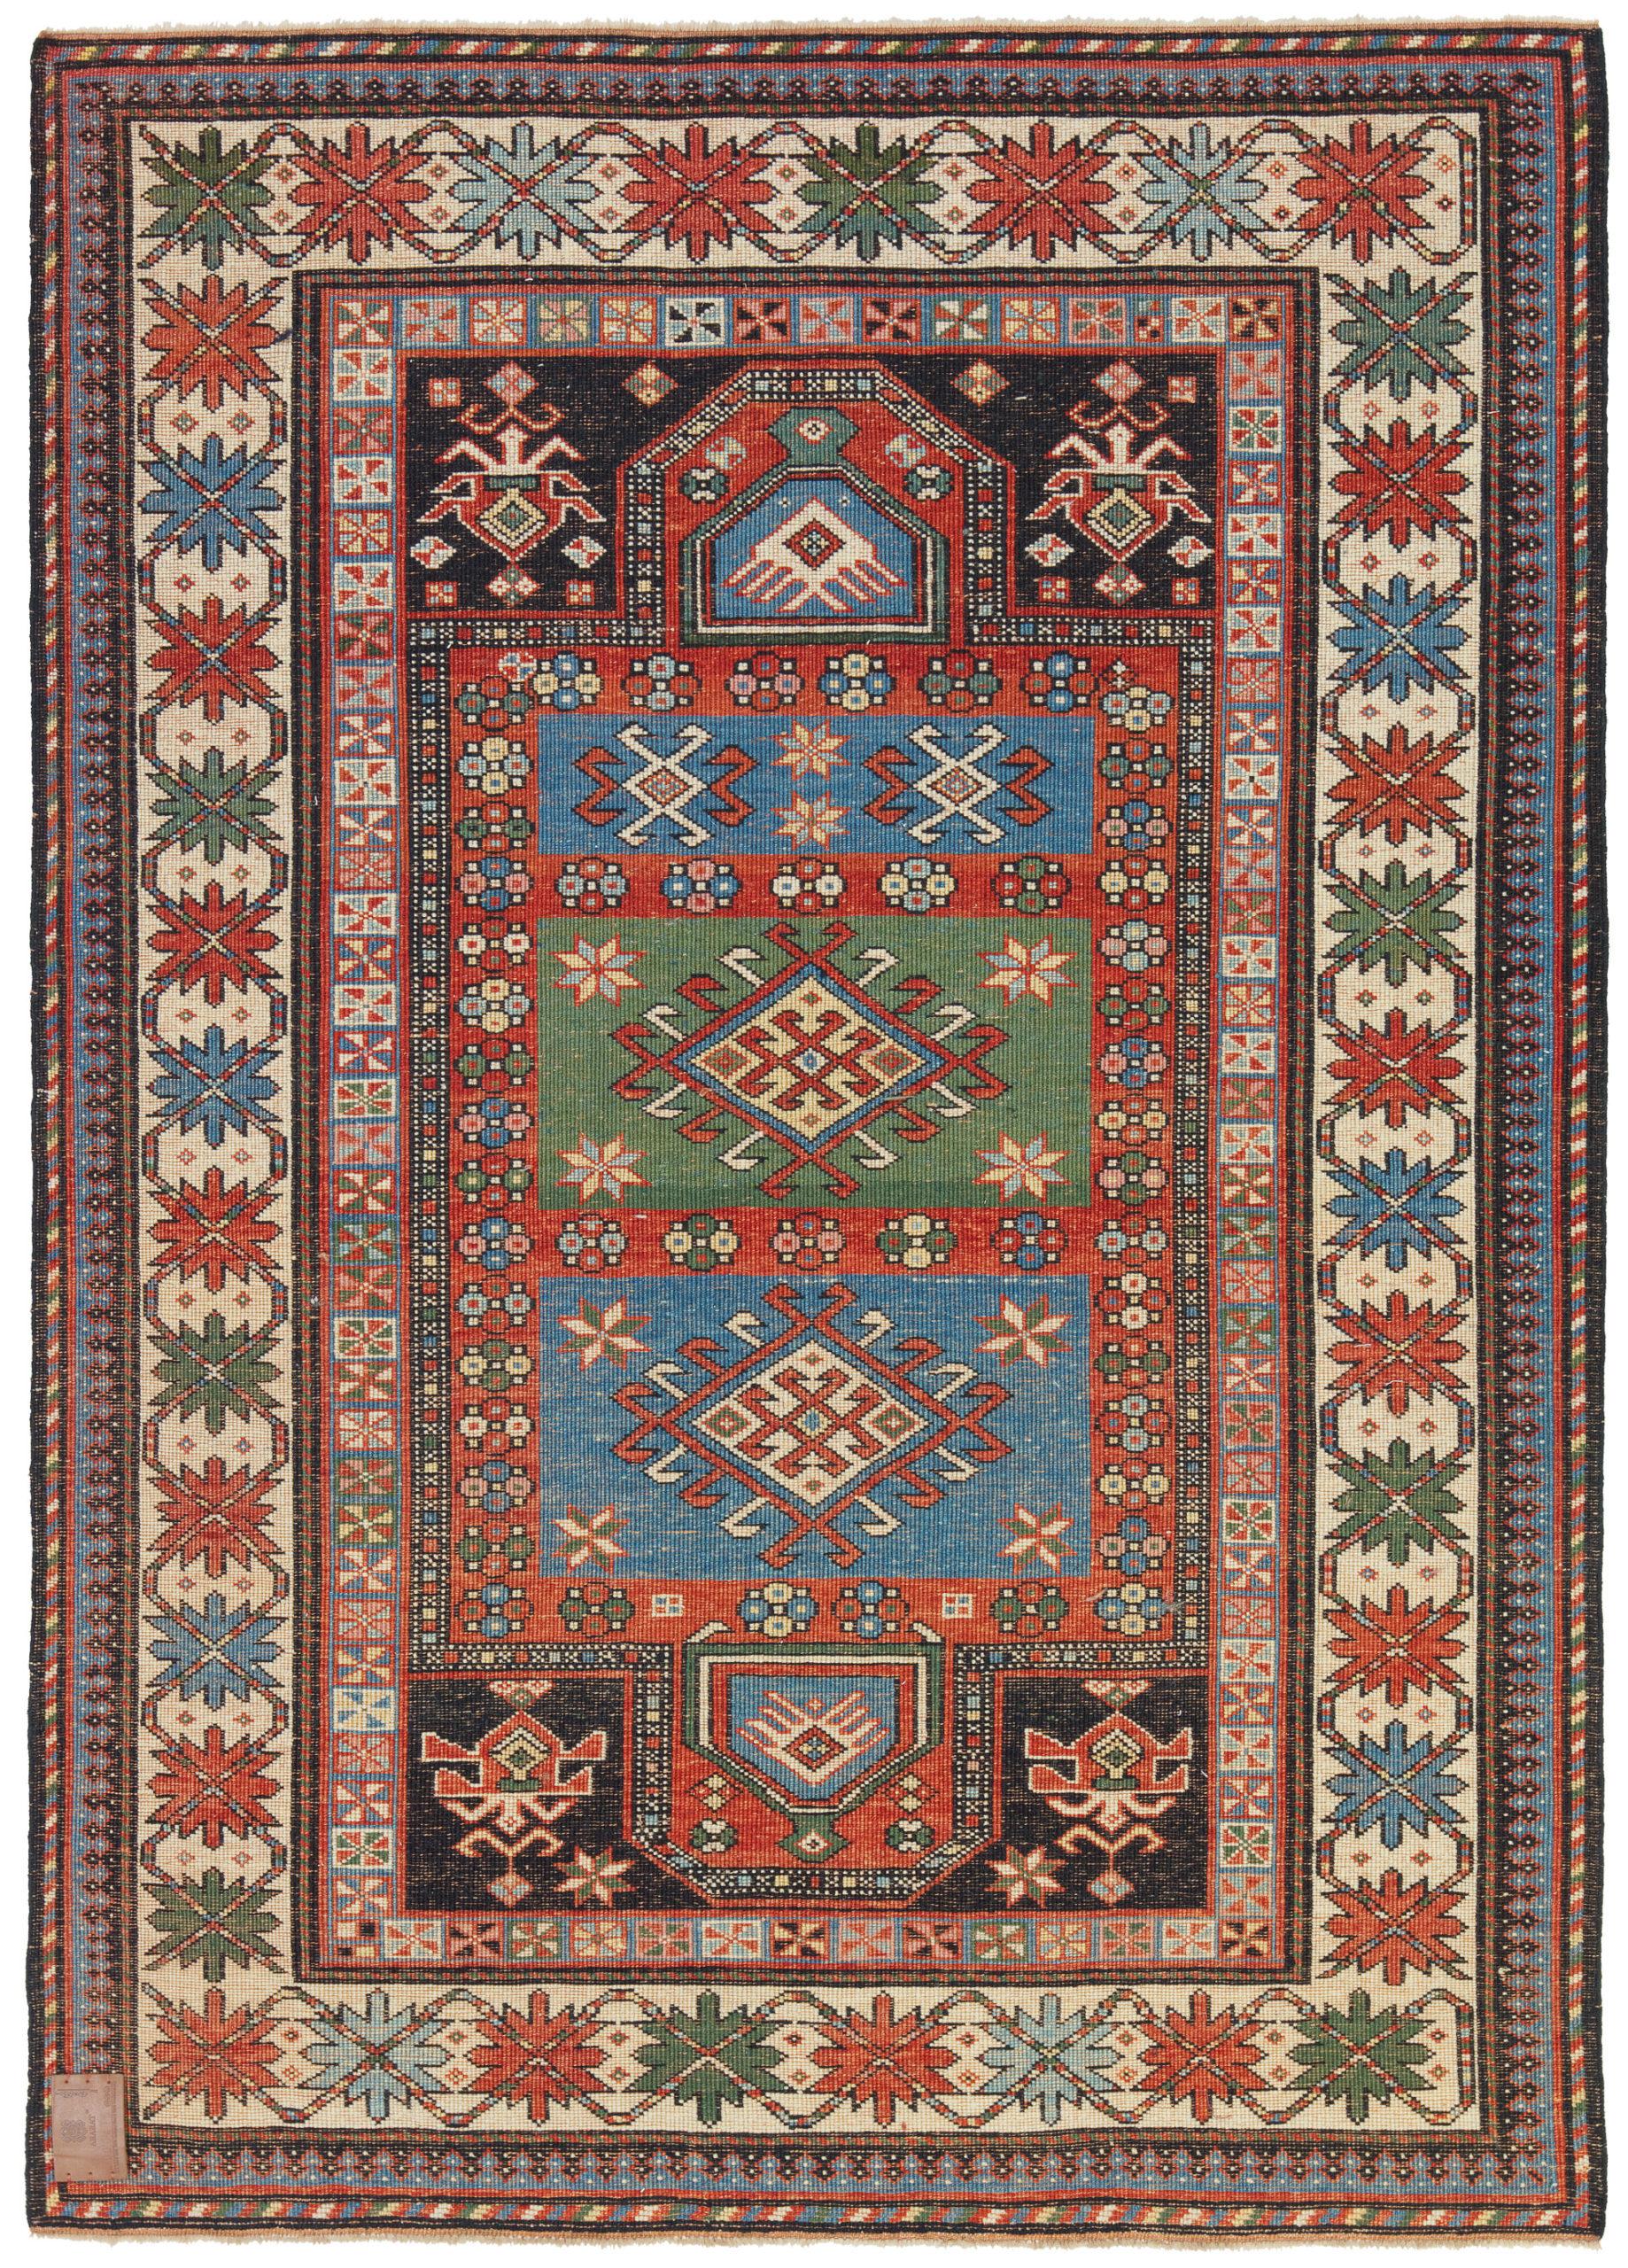 Die Designquelle des Teppichs stammt aus dem Buch Tapis du Caucase - Rugs of the Caucasus, Ian Bennett & Aziz Bassoul, The Nicholas Sursock Museum, Beirut, Libanon 2003, Nr. 46. Dies ist ein doppelter Migrab-Gebetsteppich aus dem späten 19.